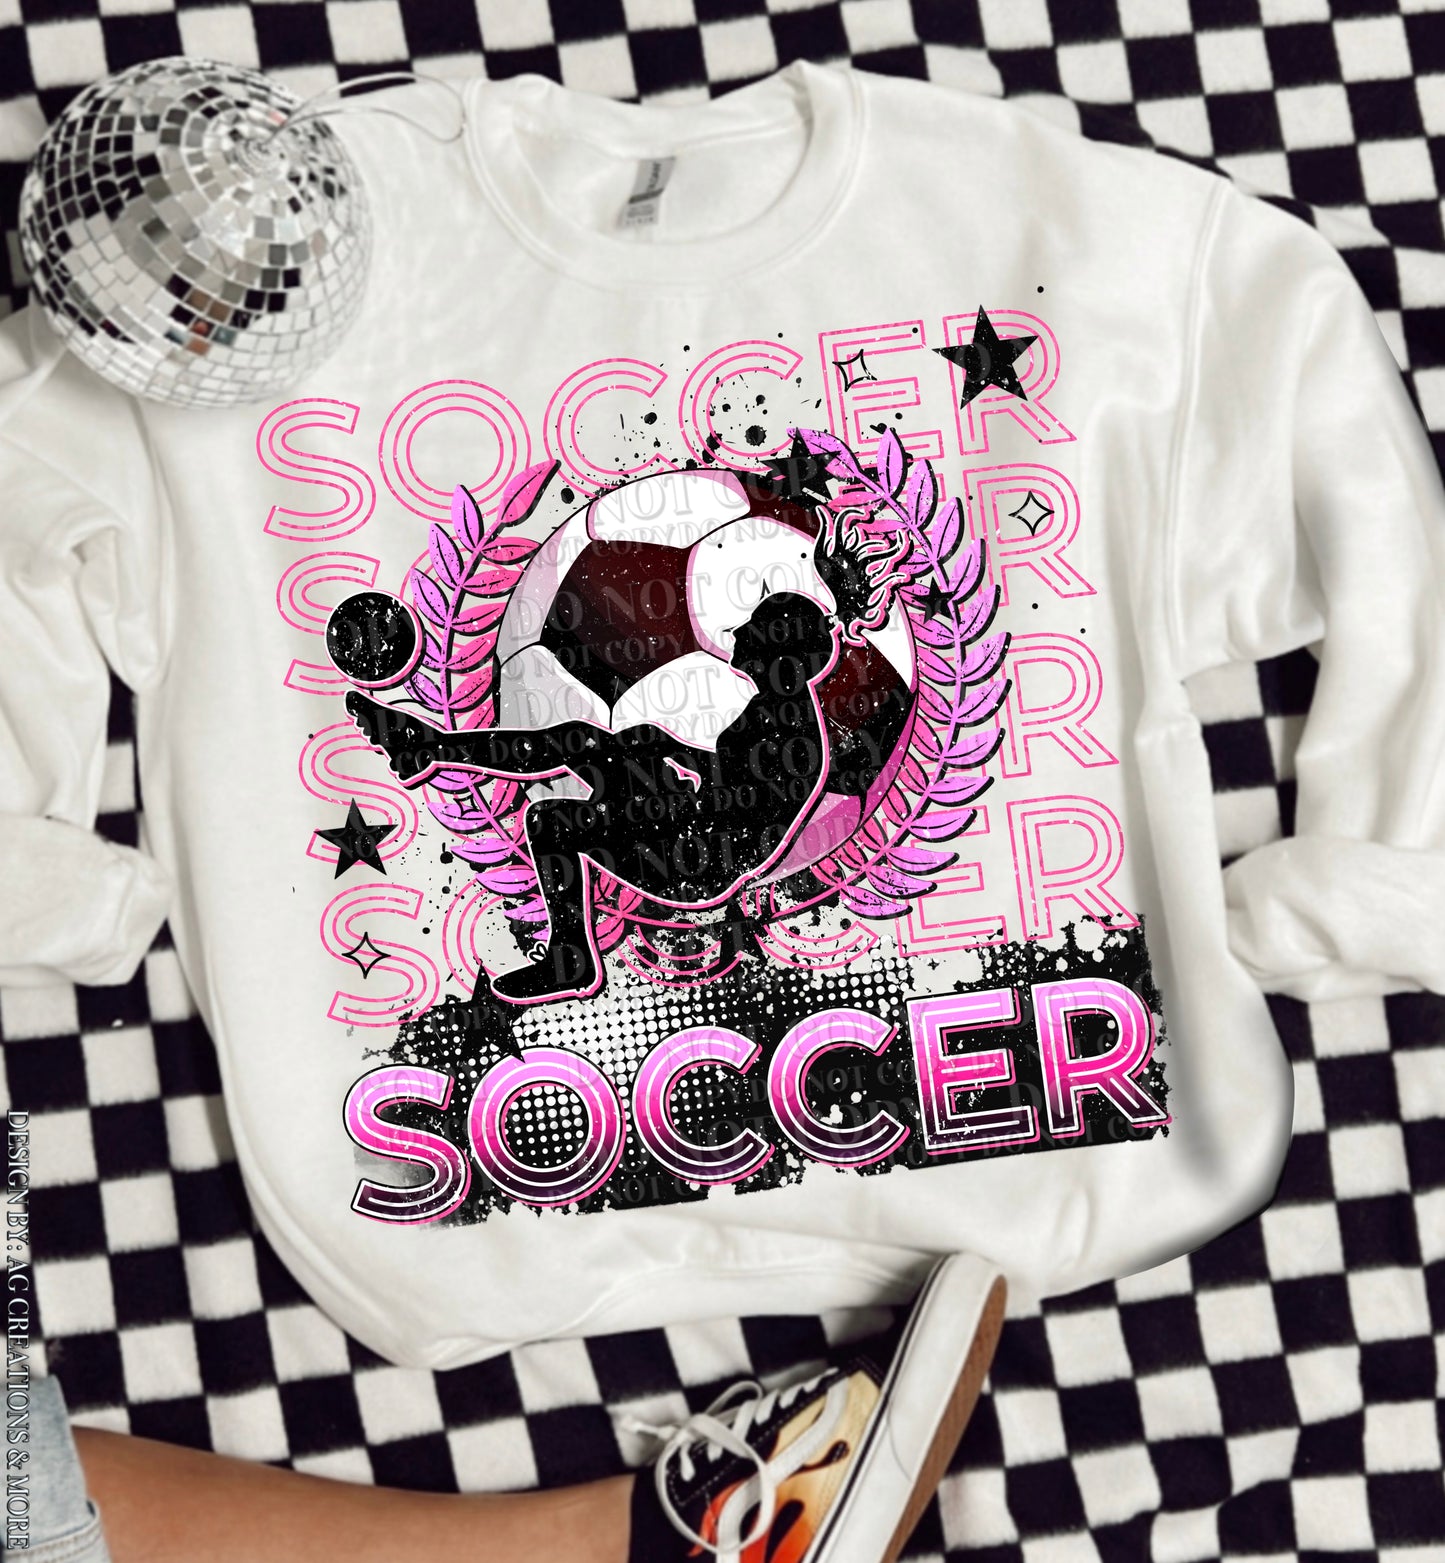 Soccer - Girl